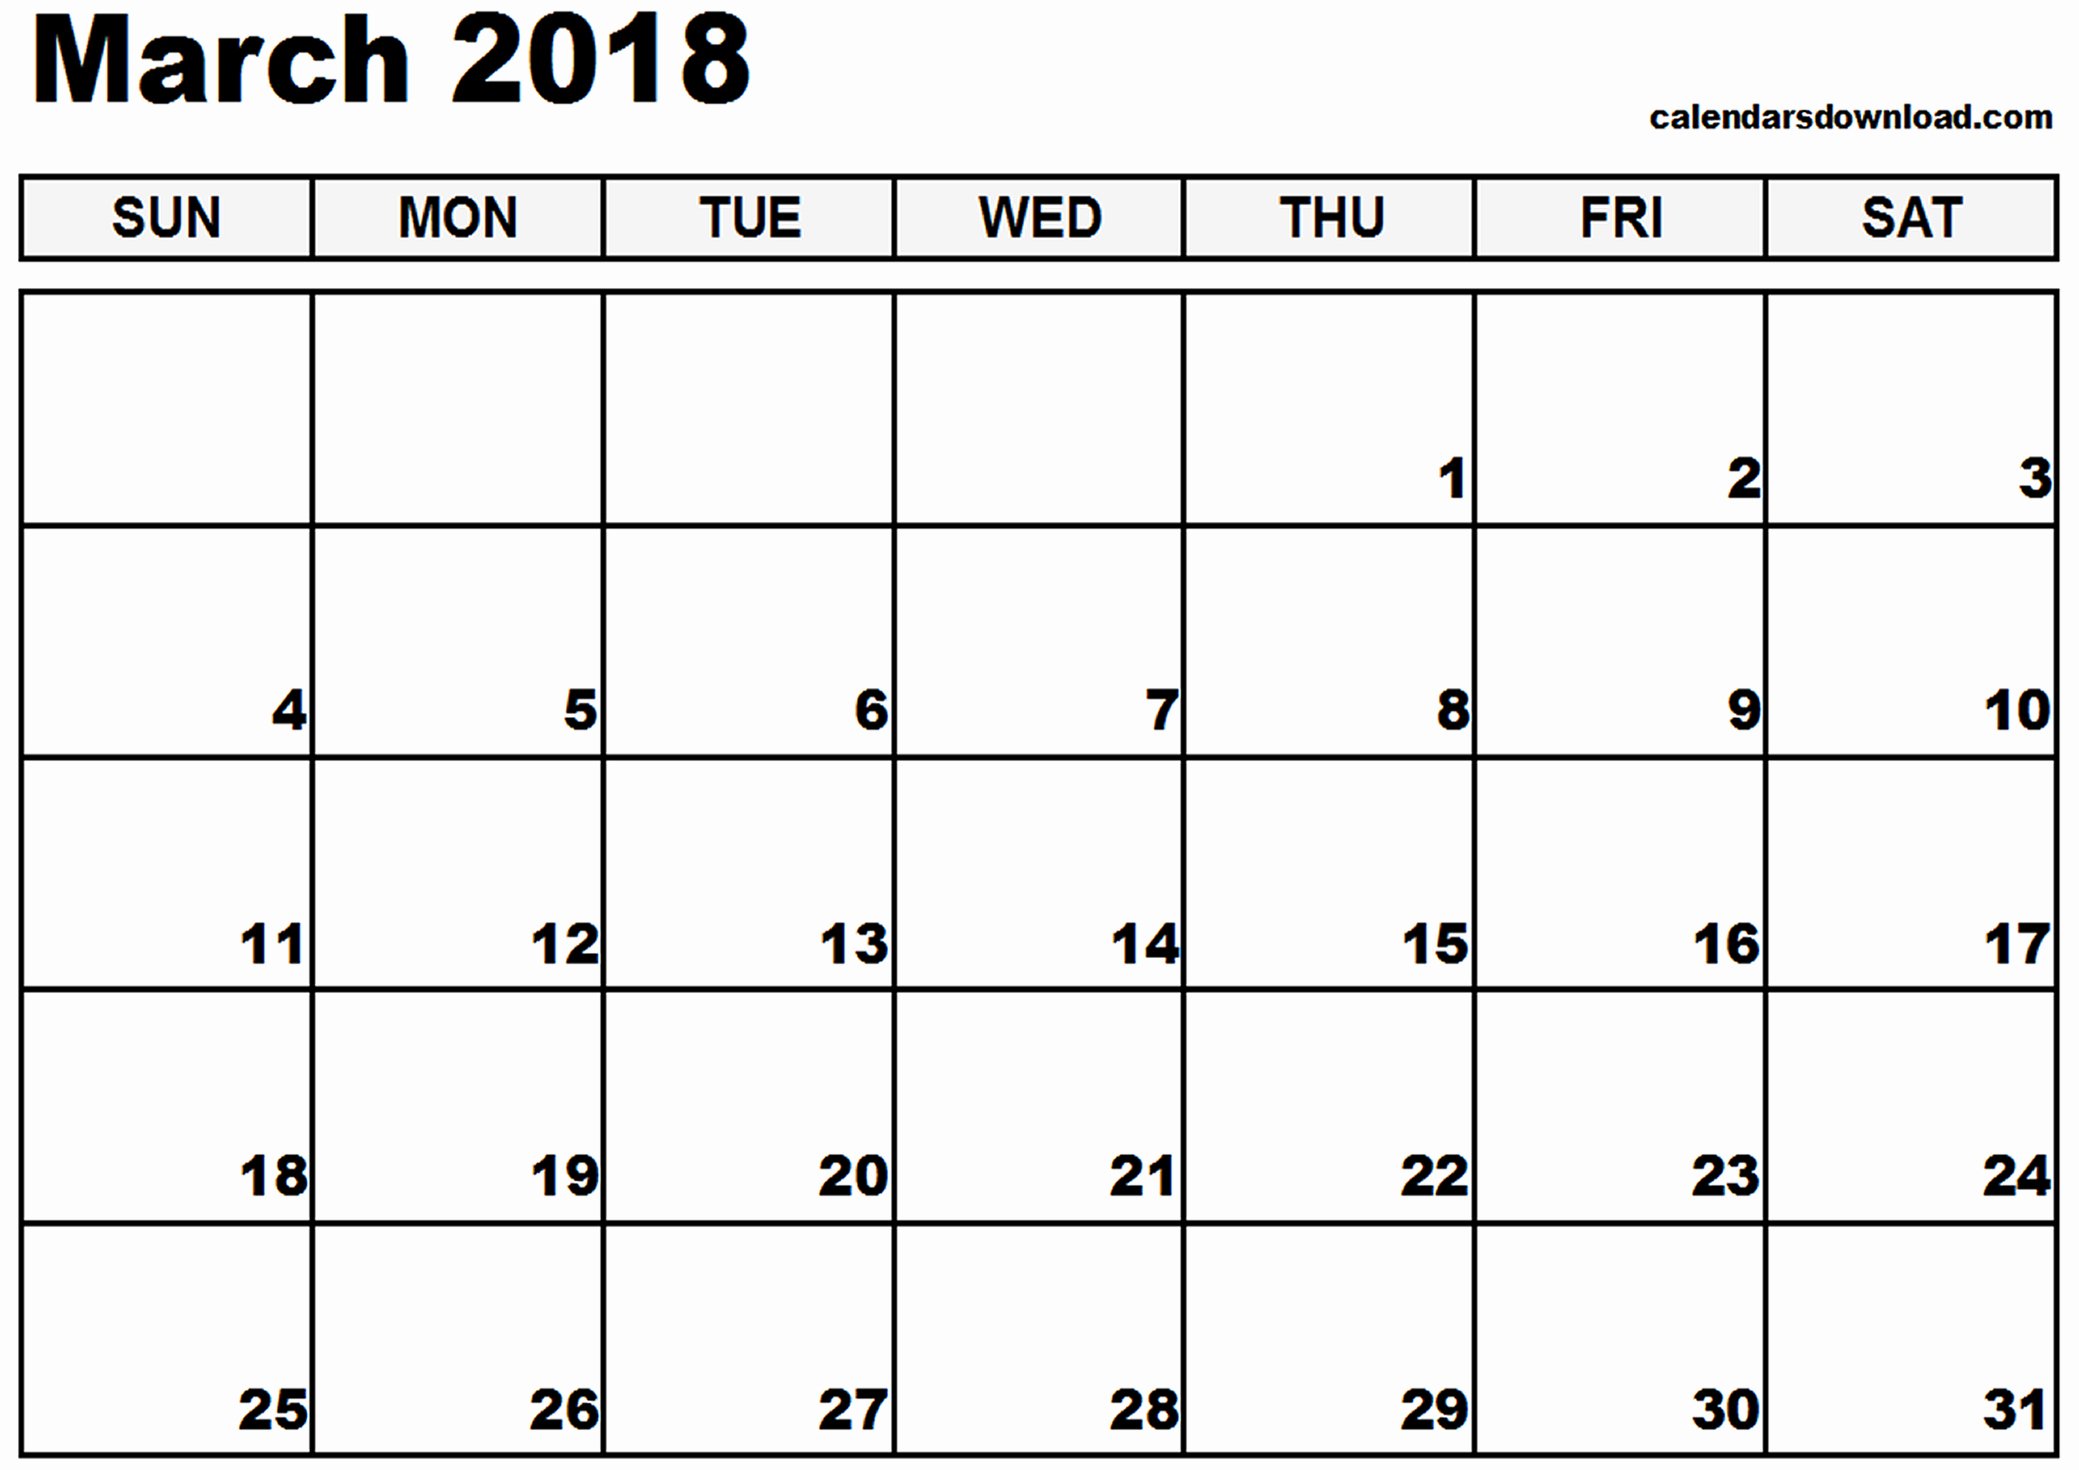 March 2018 Calendar Template